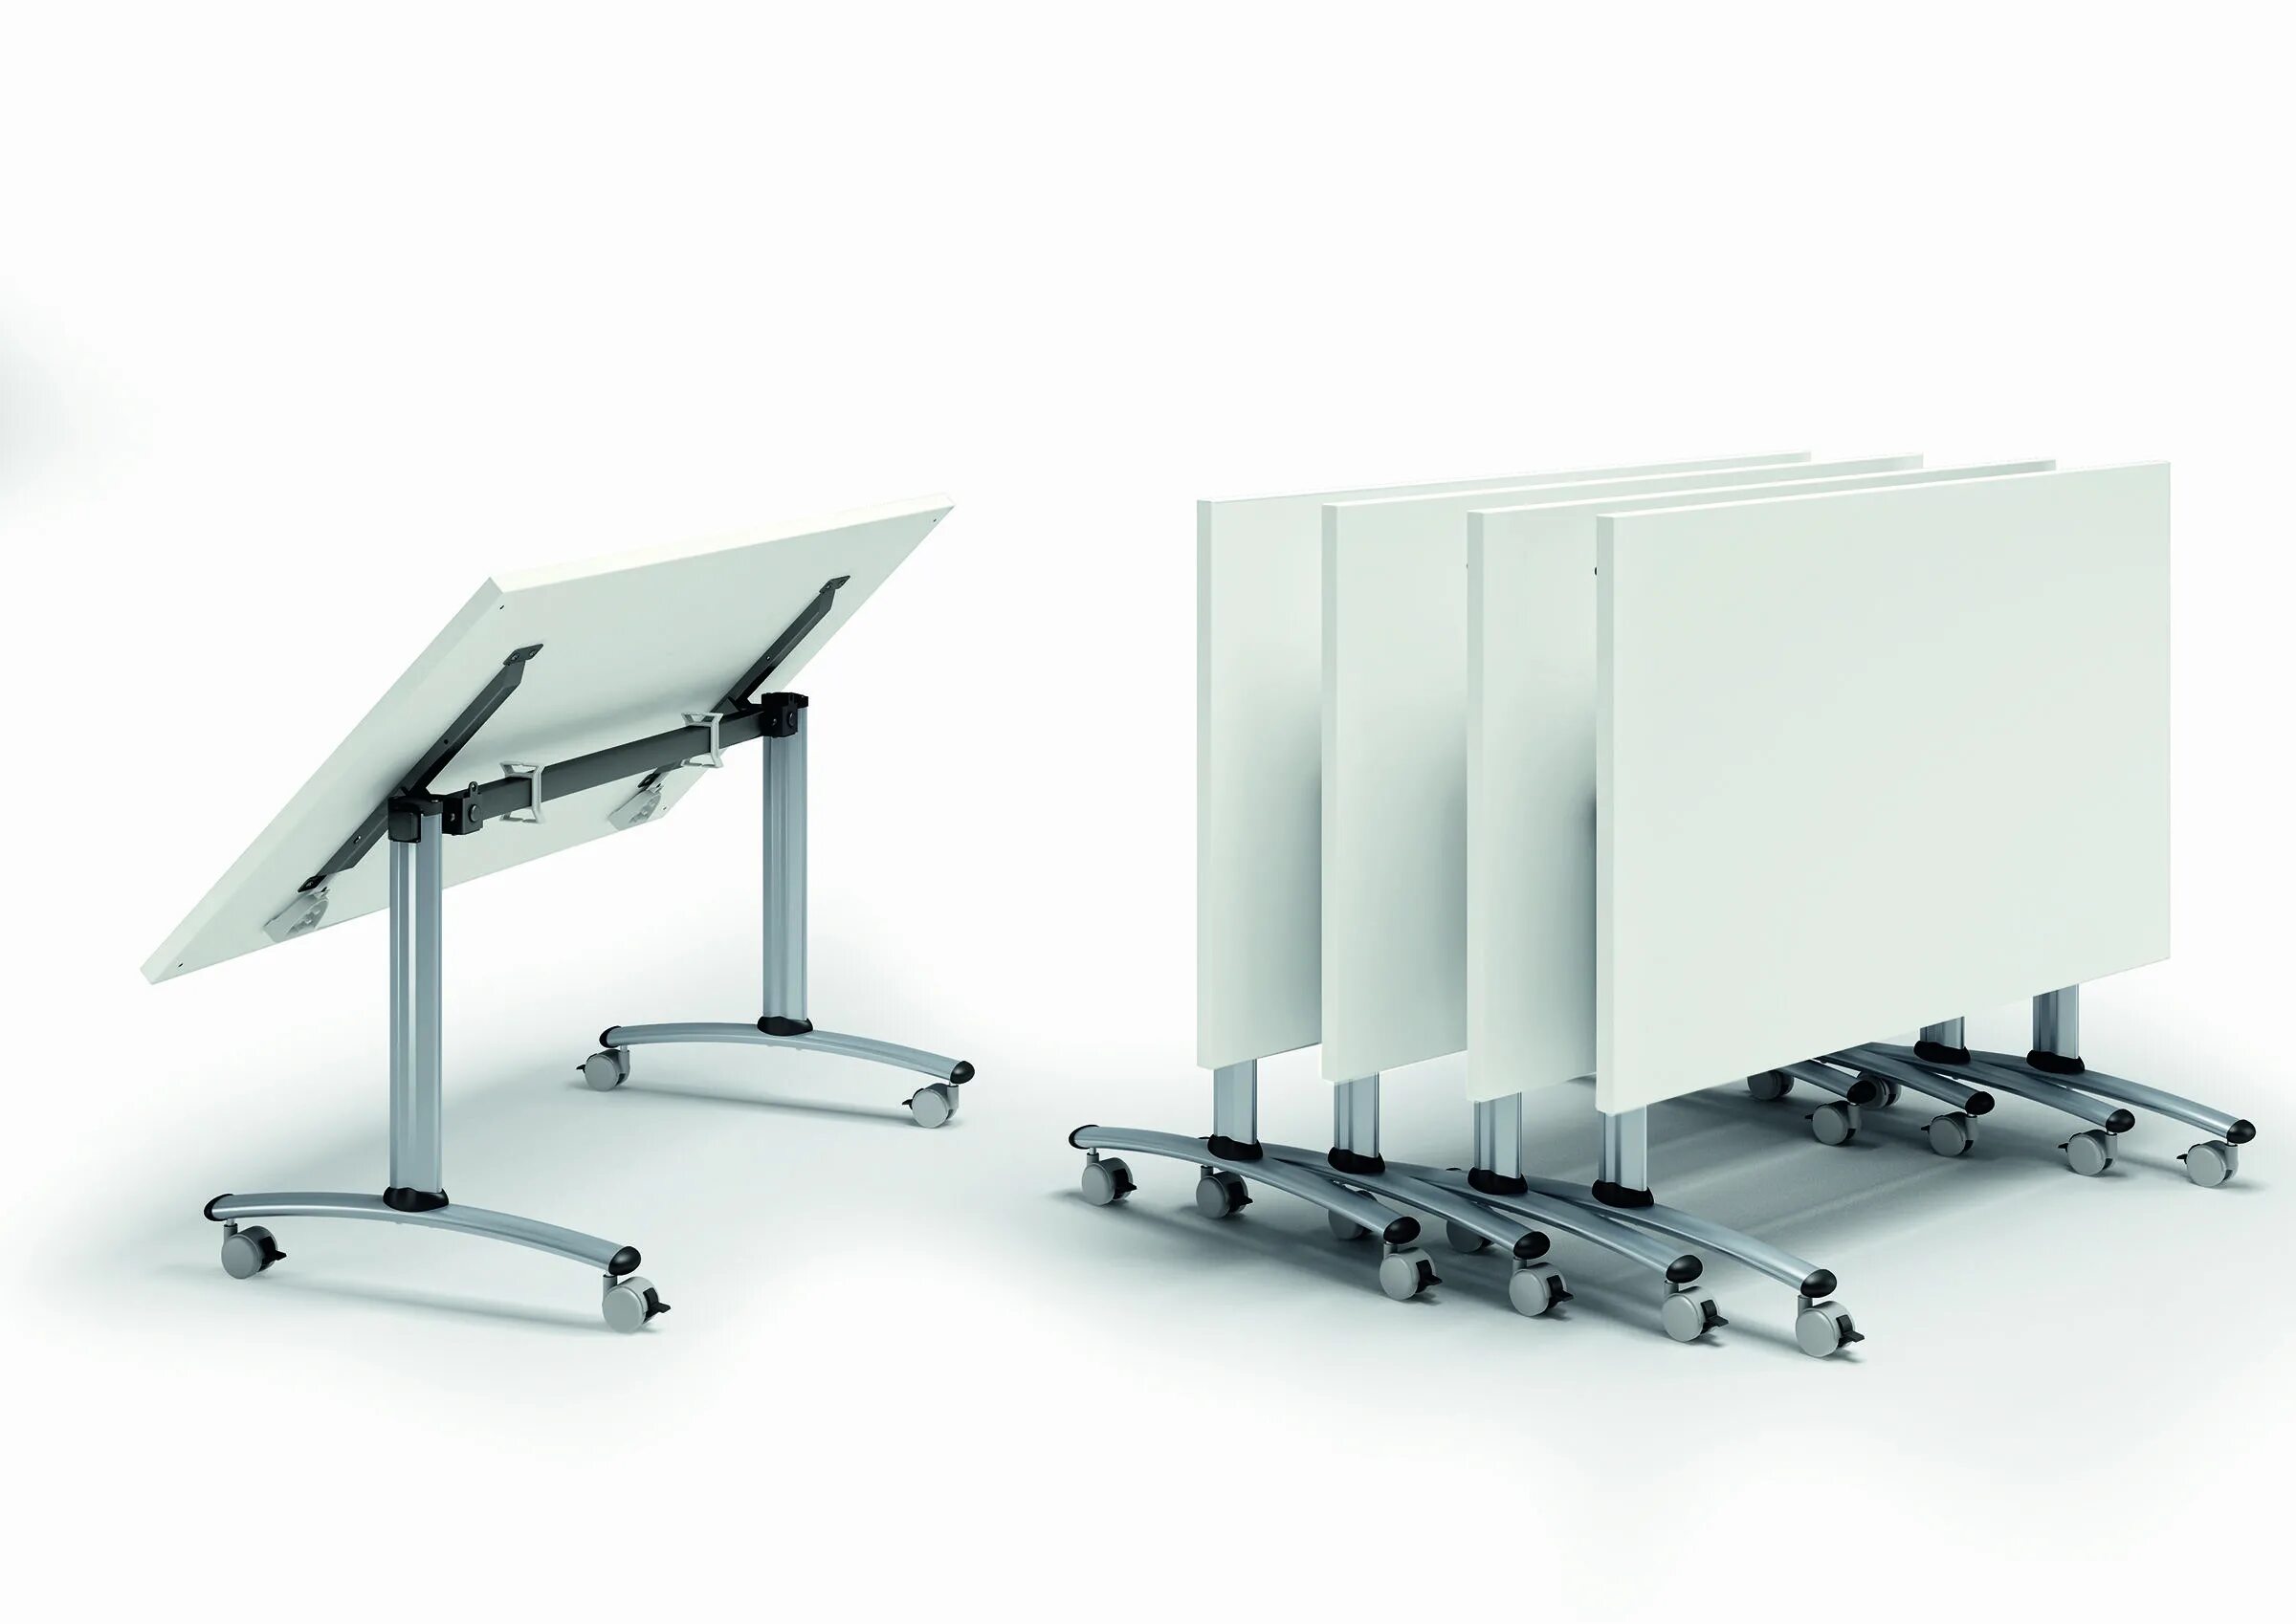 Стол FLIPTOP Steelcase. Steelcase стол Flip. Столы складные флип-топ (Flip-Top). Механизм для откидного стола.